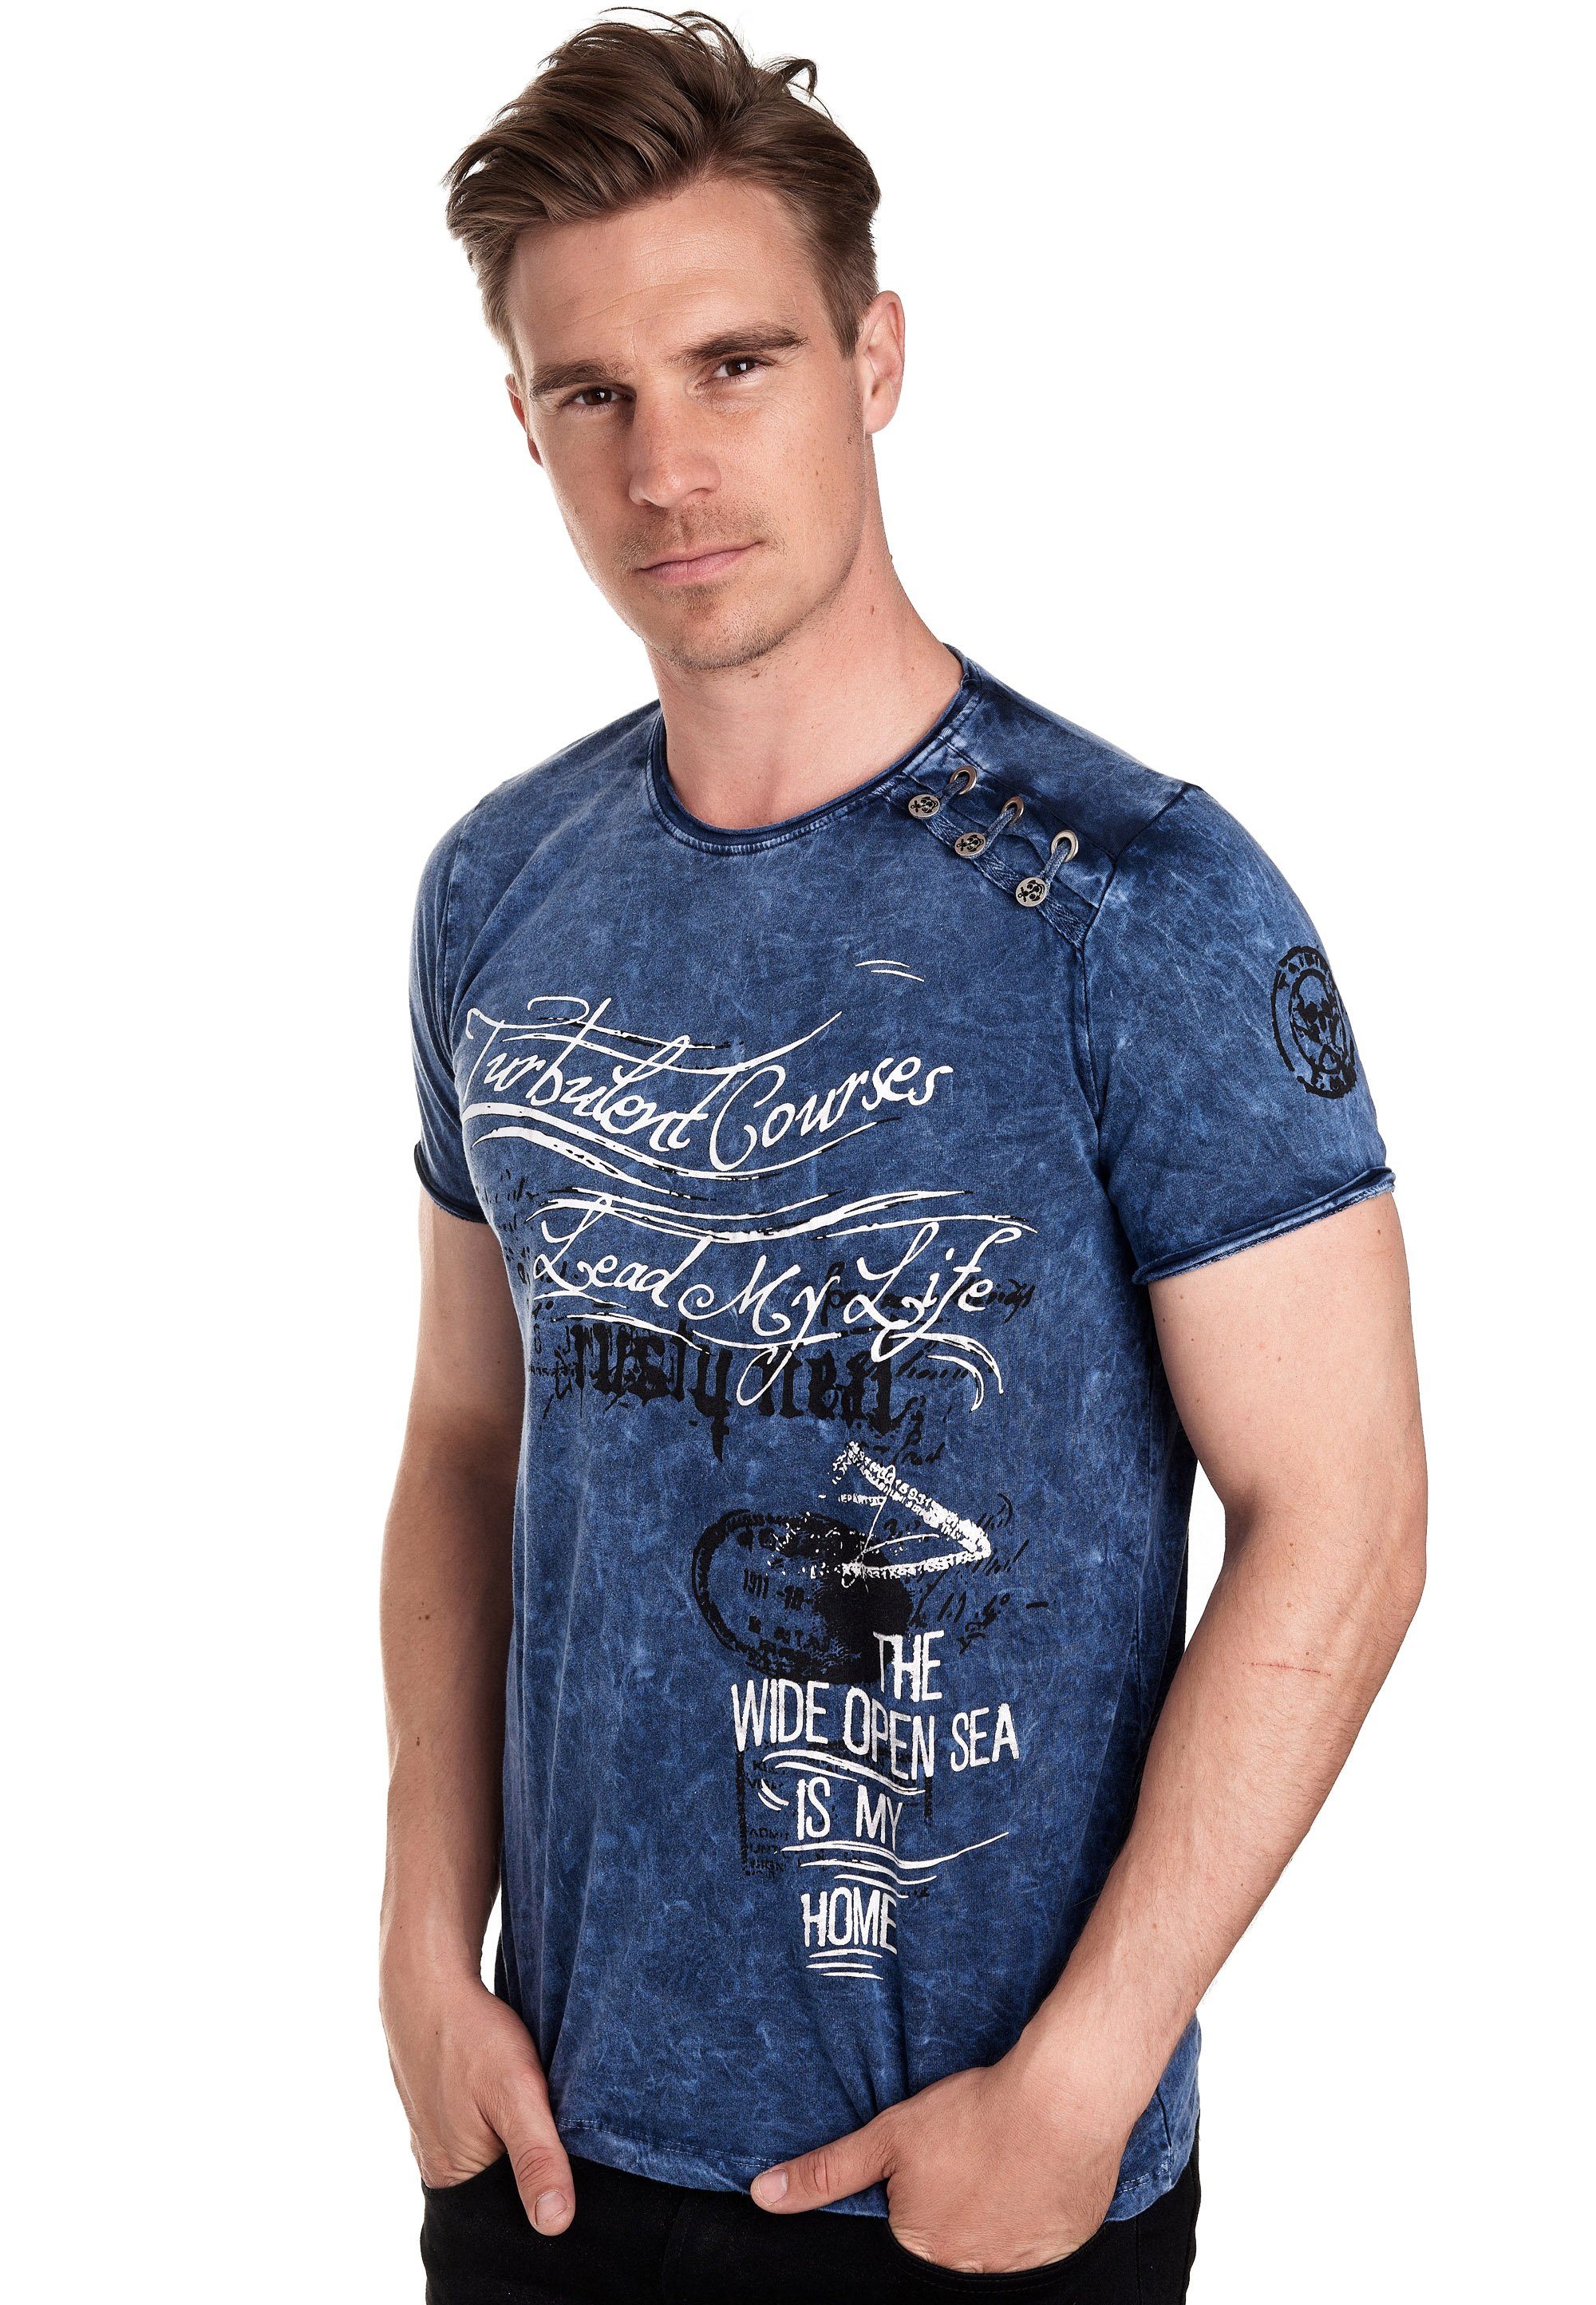 Rusty Neal T-Shirt Vintage-Look tollem blau in